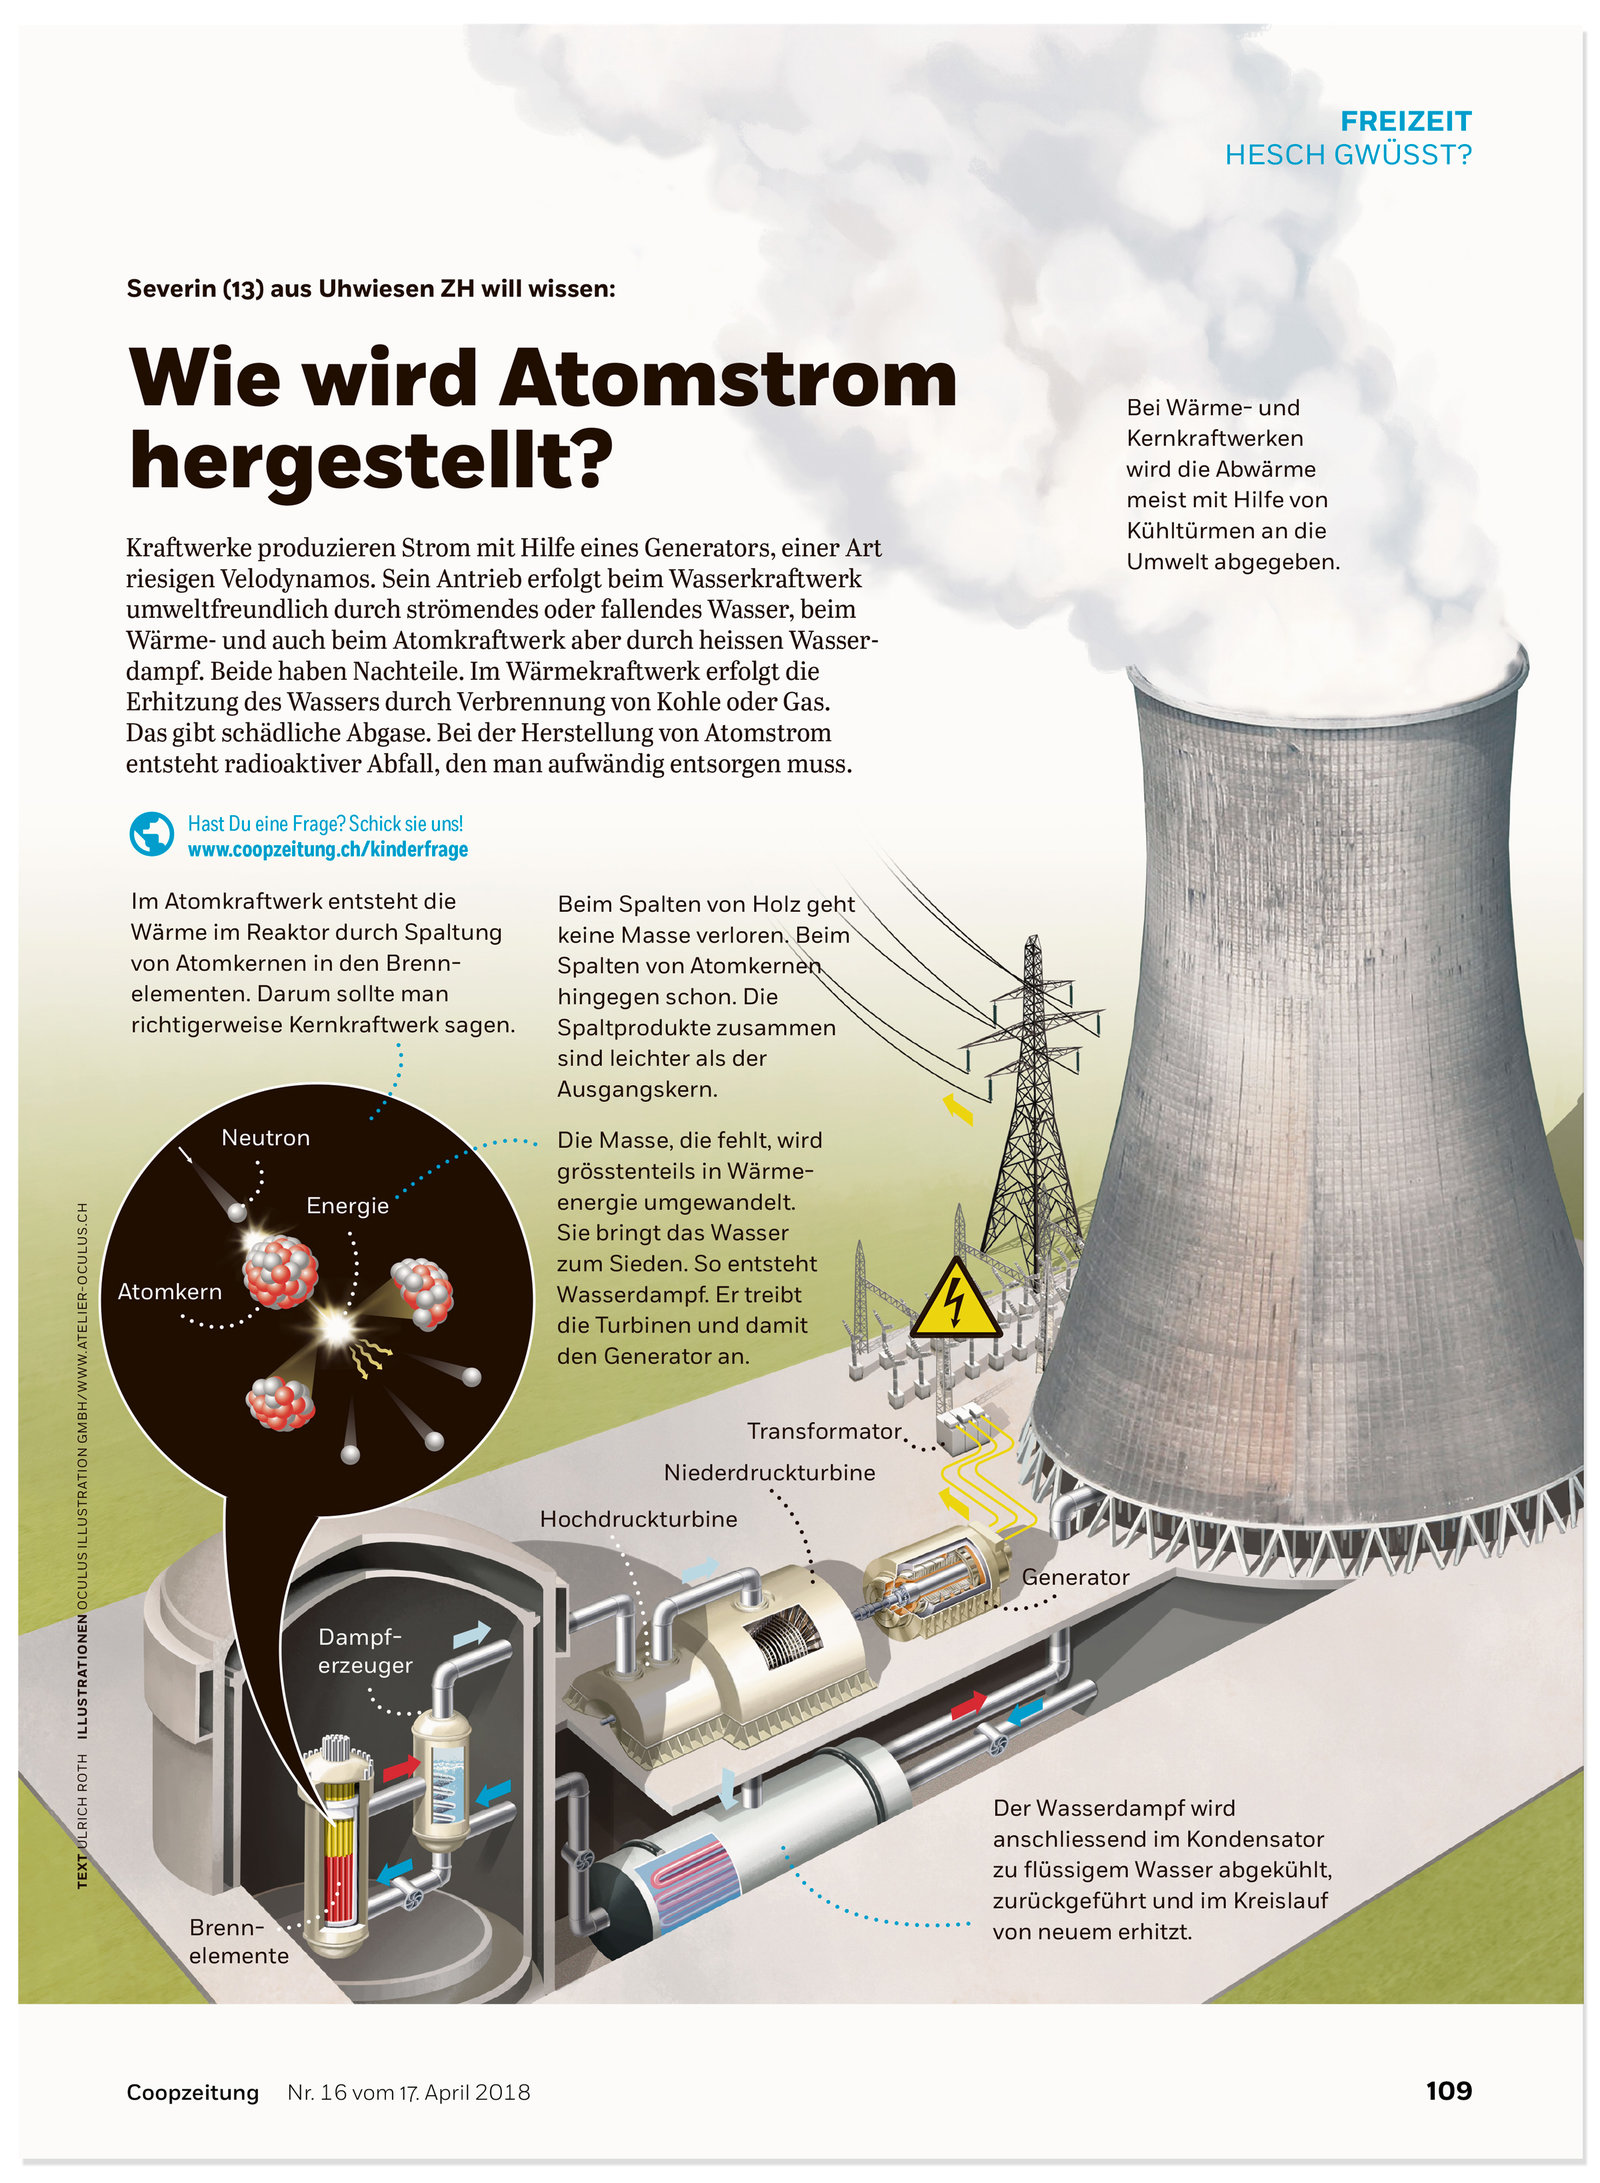 oculus-illustration-coopzeitung-hesch-gwuesst-atomstrom